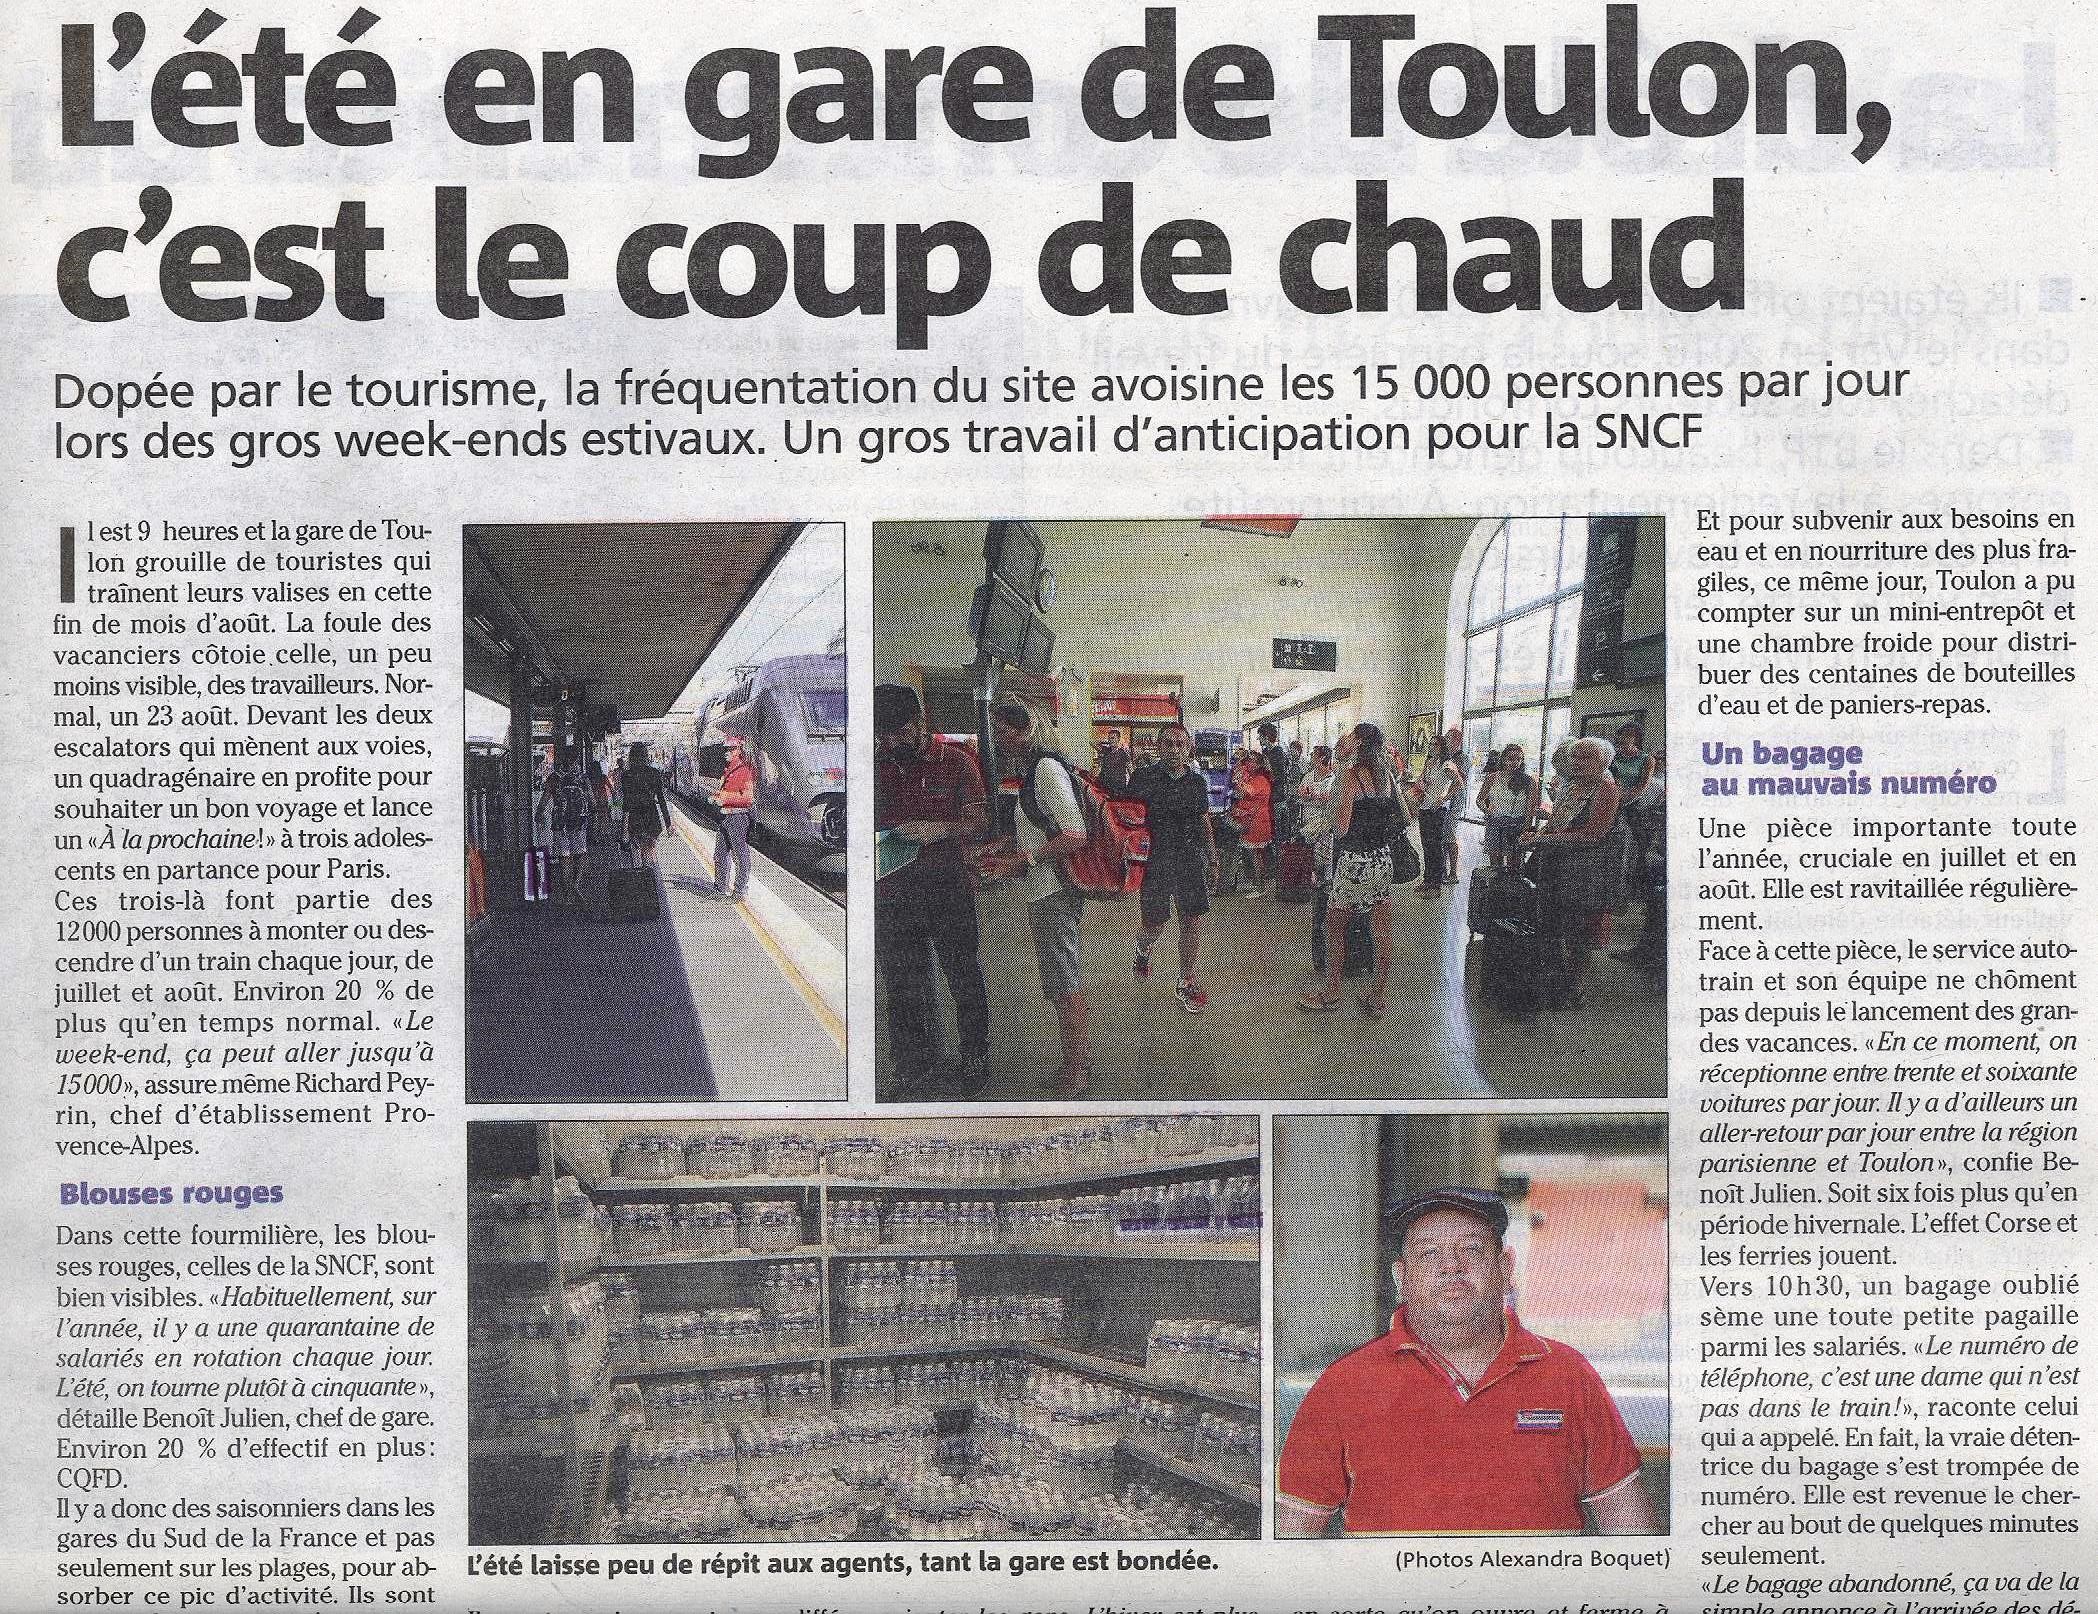 17-08-26-Gare Toulon 001.jpg